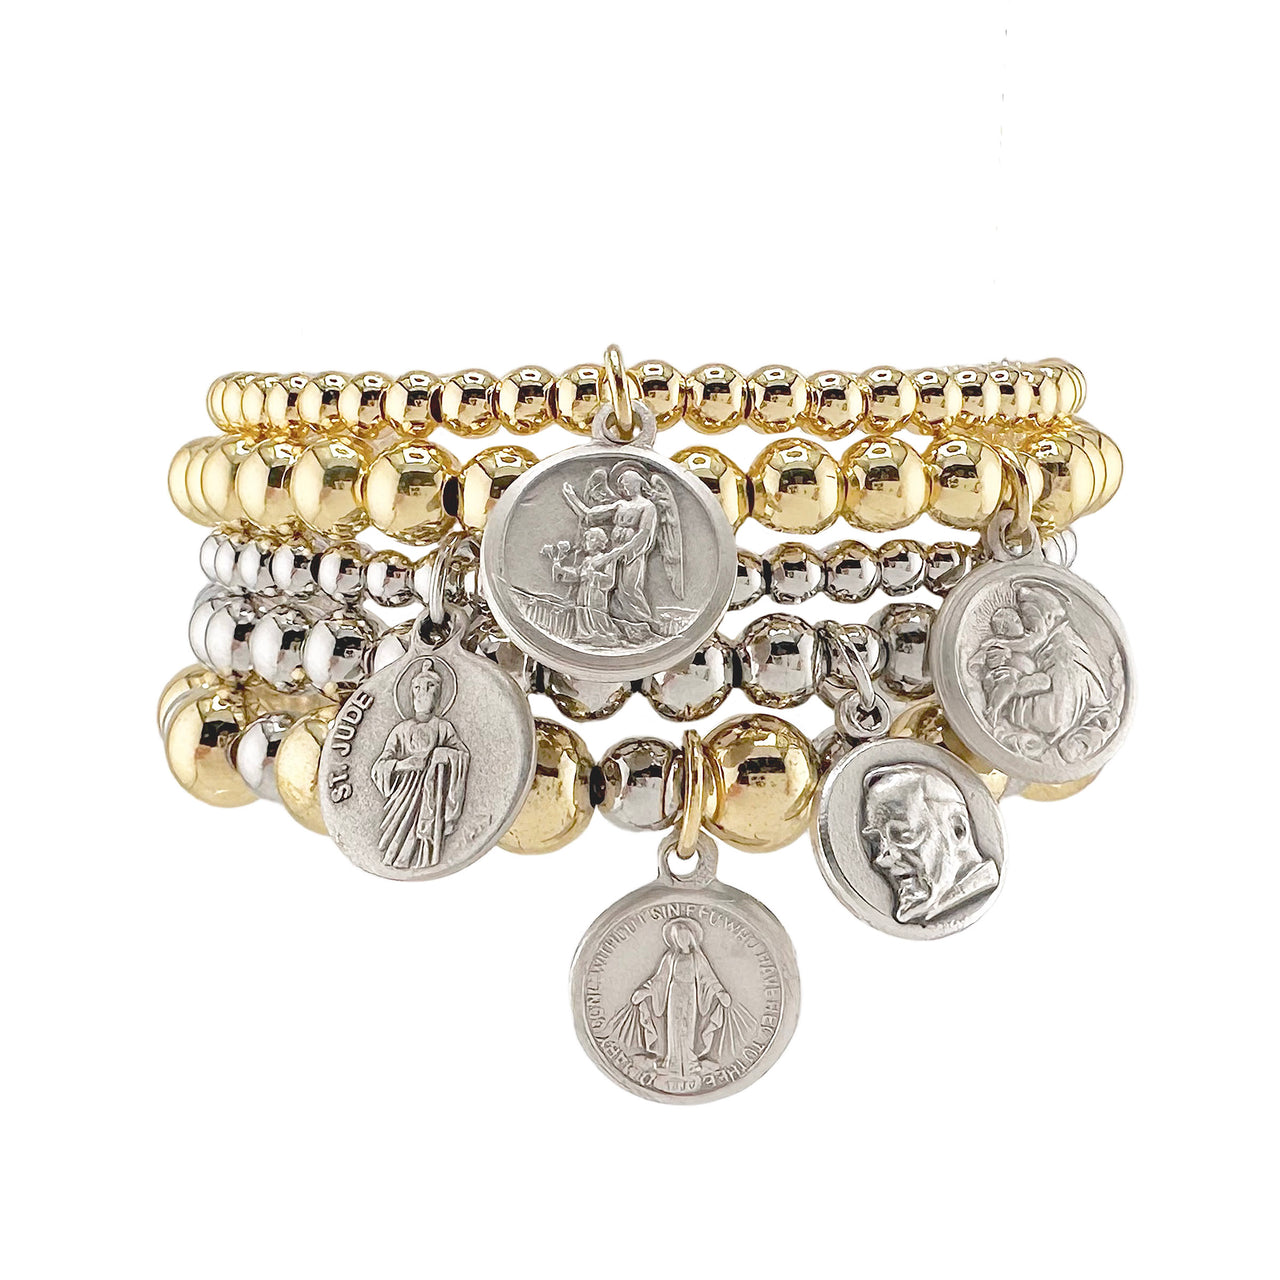 Gia Collection of Religious Prayer Bracelets